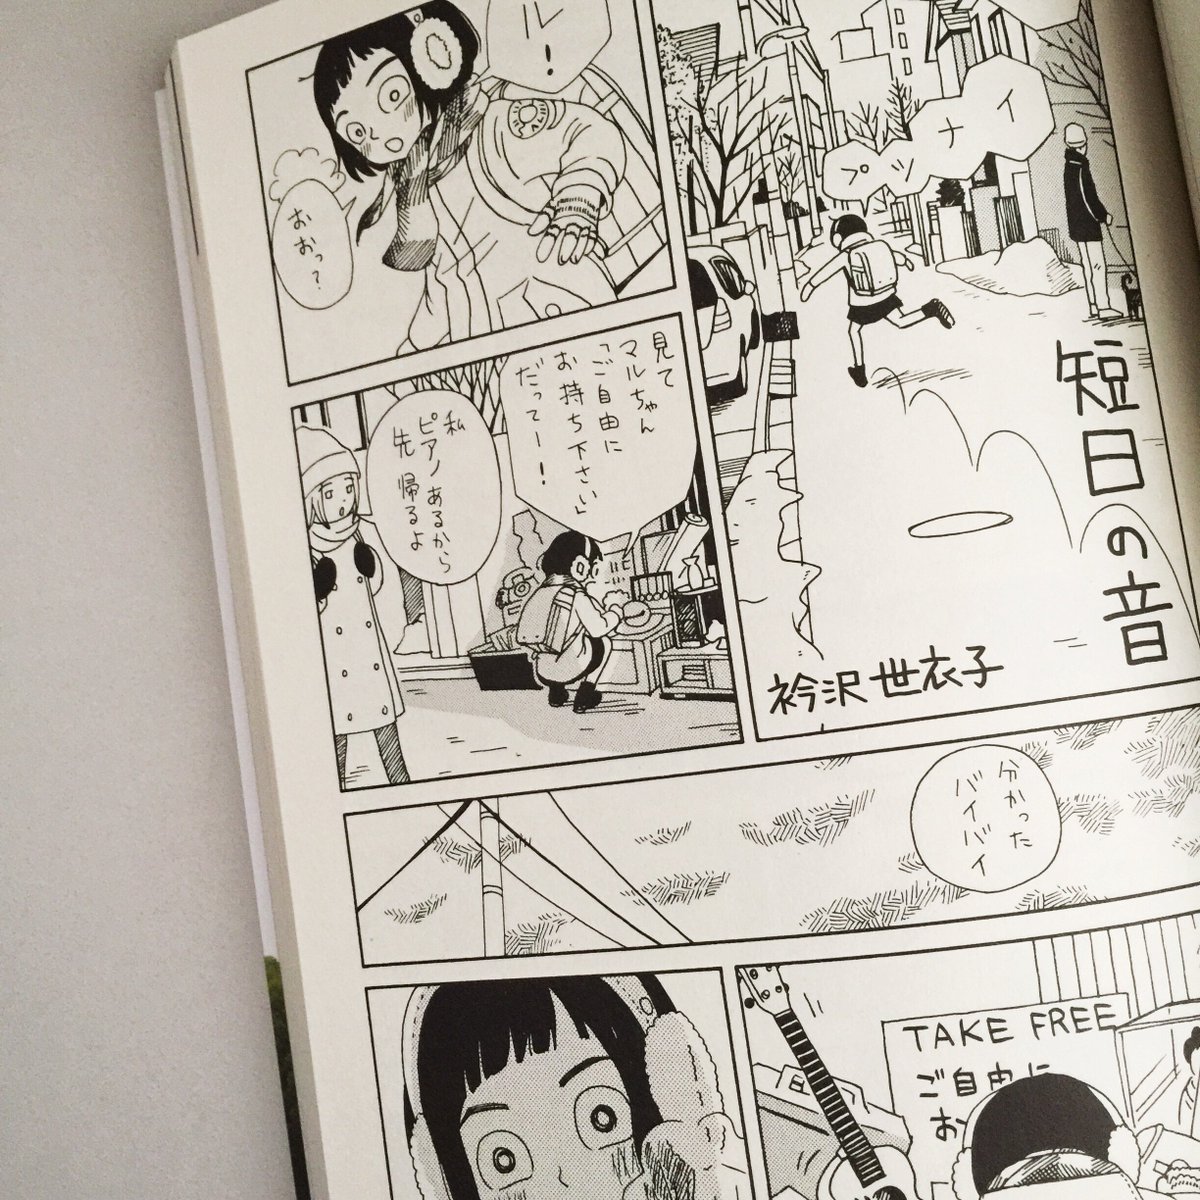 【漫画】『飛ぶ教室』（光村図書出版）長崎訓子さんの編集号 特集「漫画の子どもたち」が今月25日に発売です！私は「短日の音」という短編を描きました。 